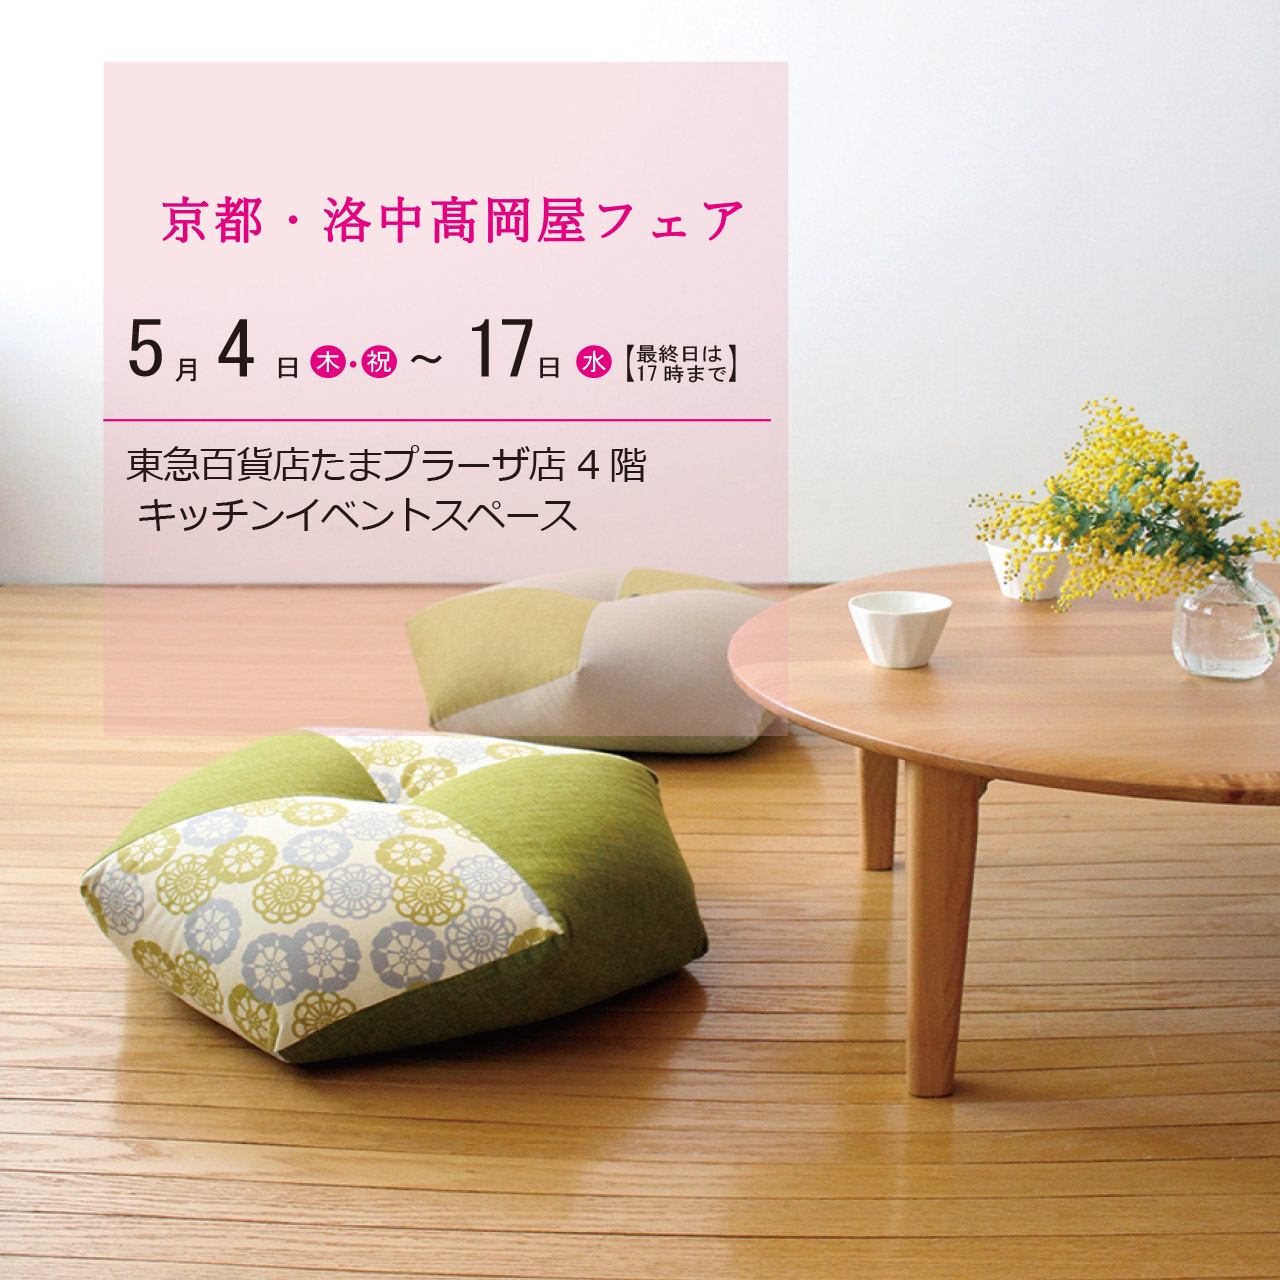 東急たまプラーザ店 4階家庭用品 期間限定イベント（5/4~5/17)